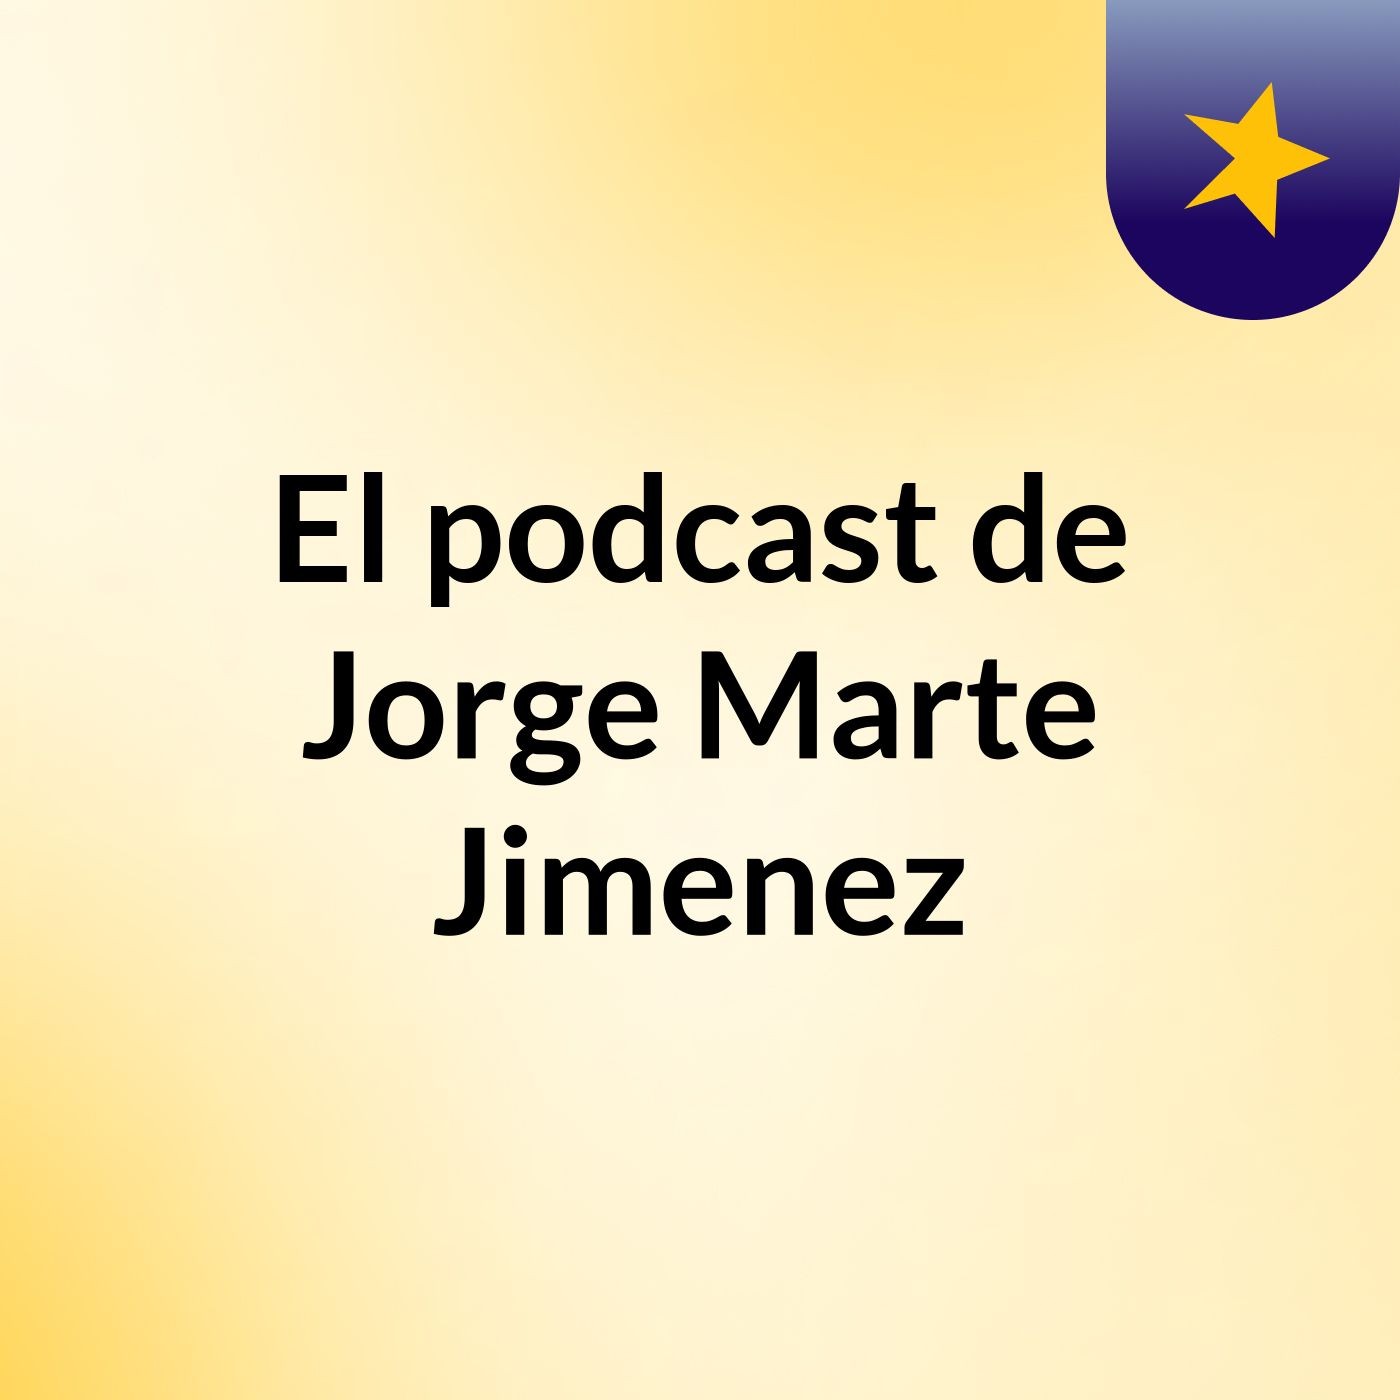 Episodio 3 - El podcast de Jorge Marte Jimenez